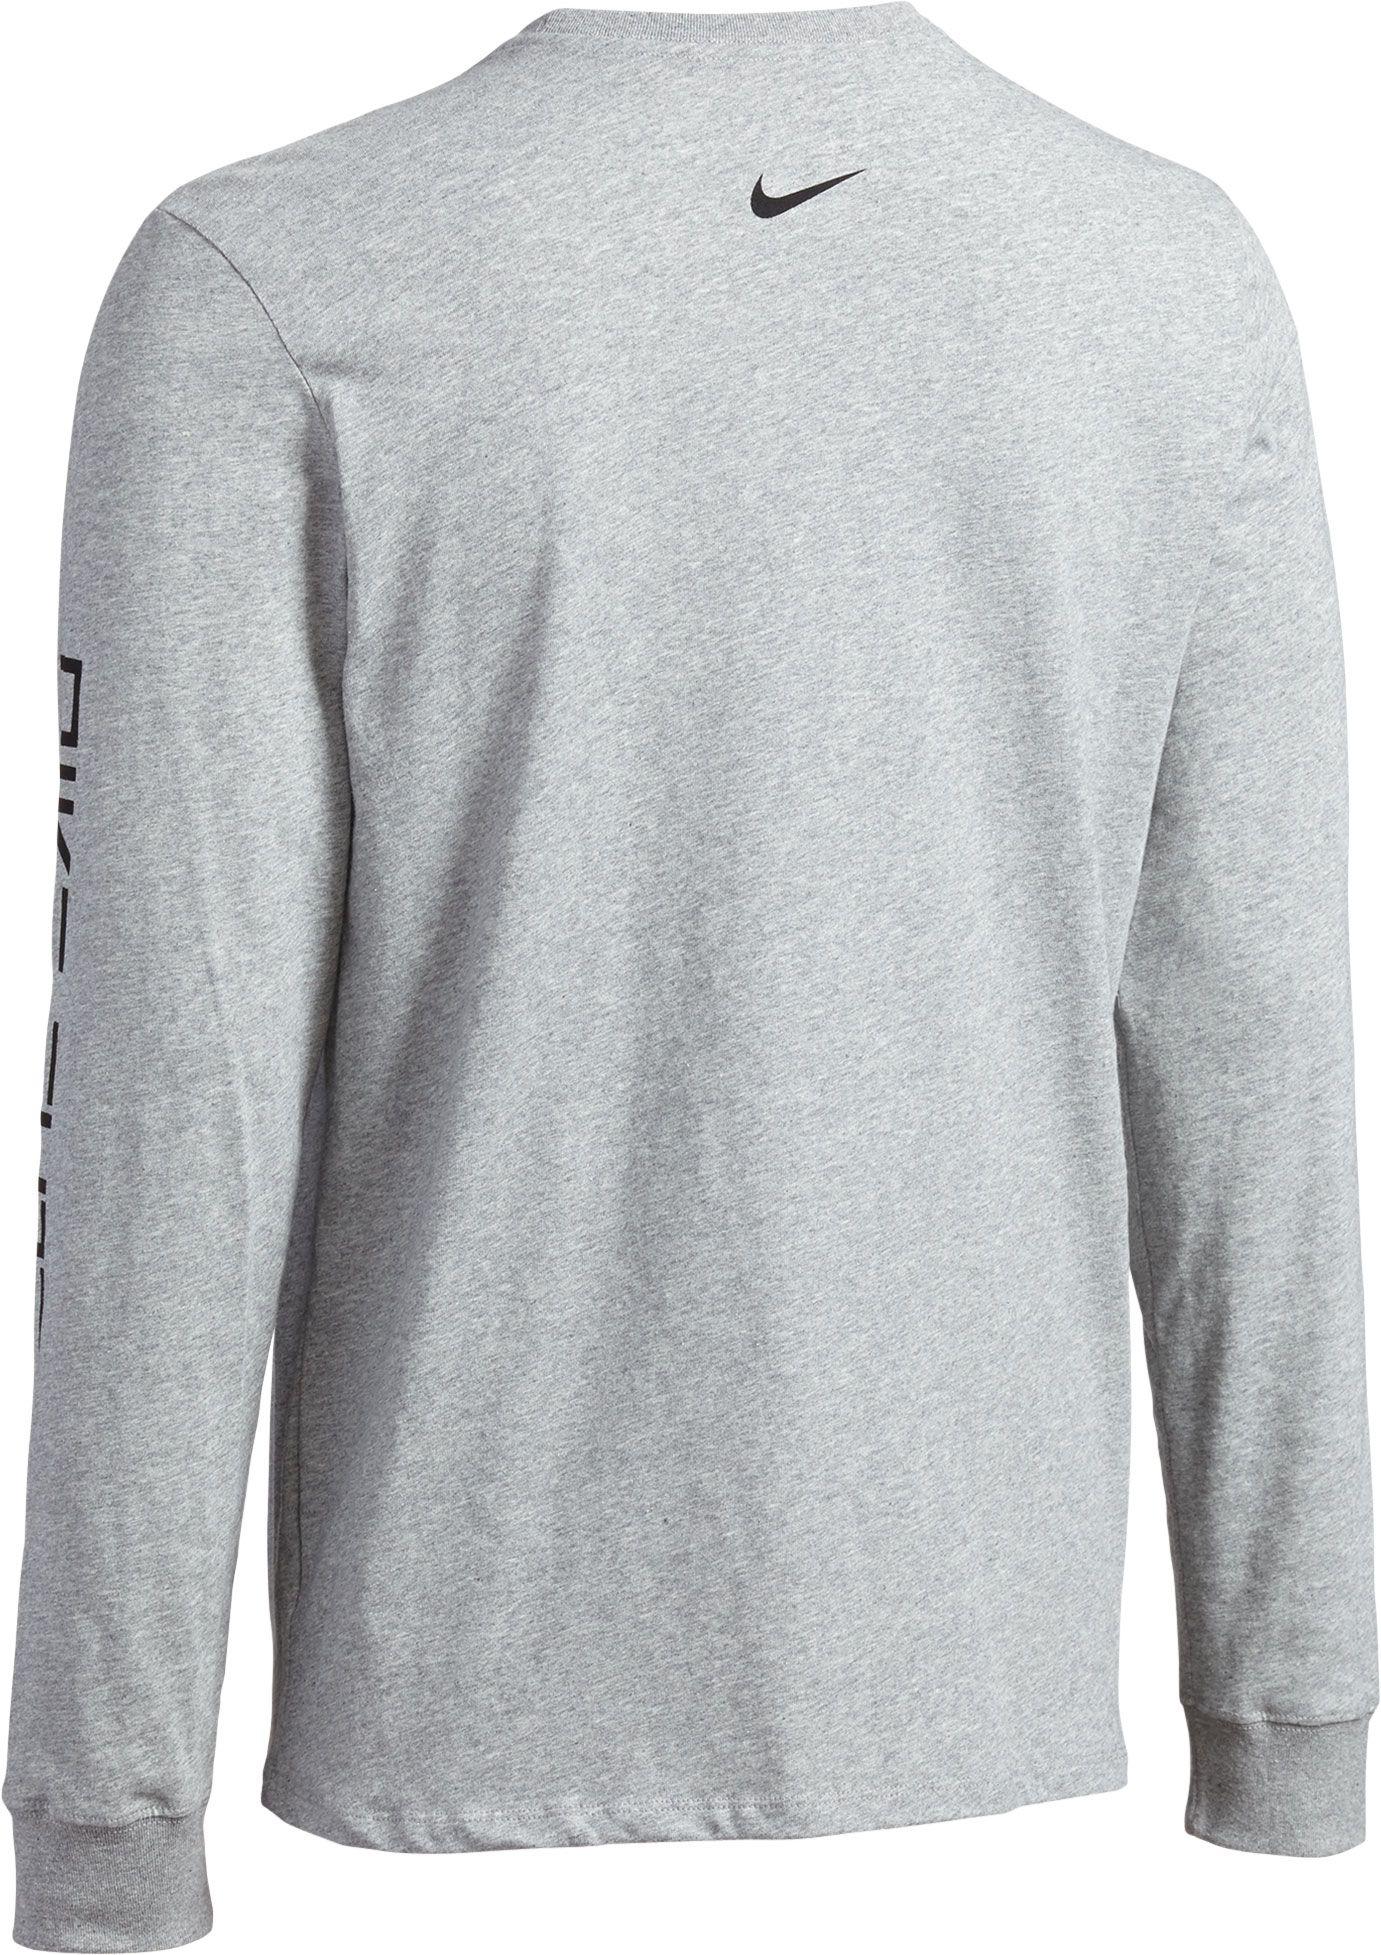 Lyst - Nike Dry Elite Dunkivert Long Sleeve Basketball Shirt in Gray ...